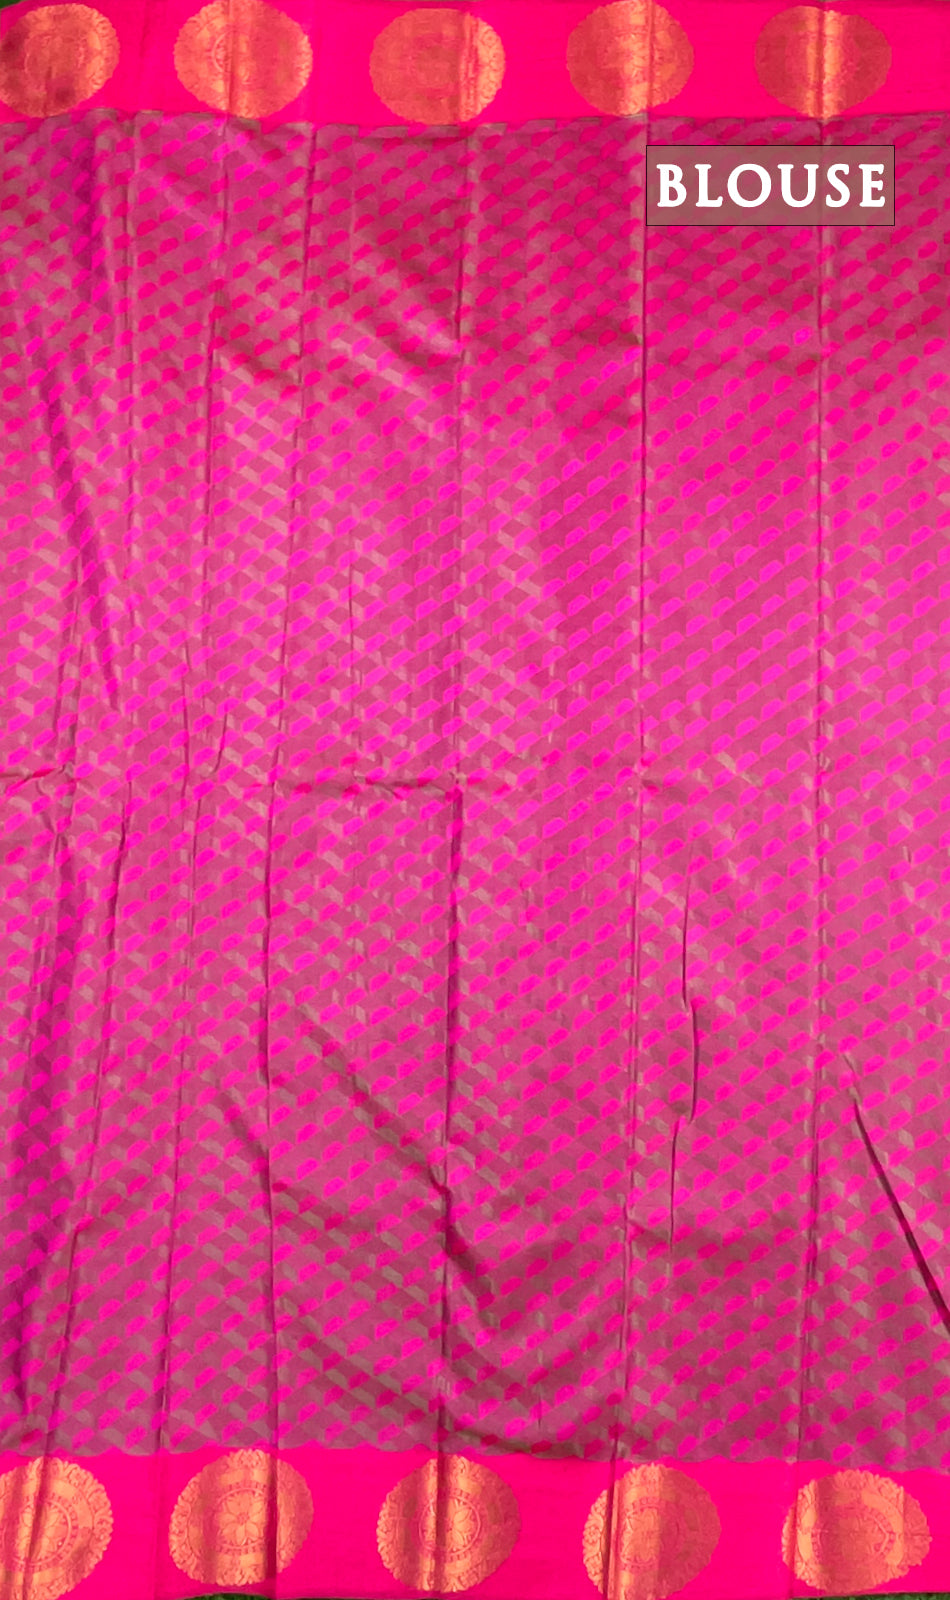 Dual shade of green and pink semi silk saree